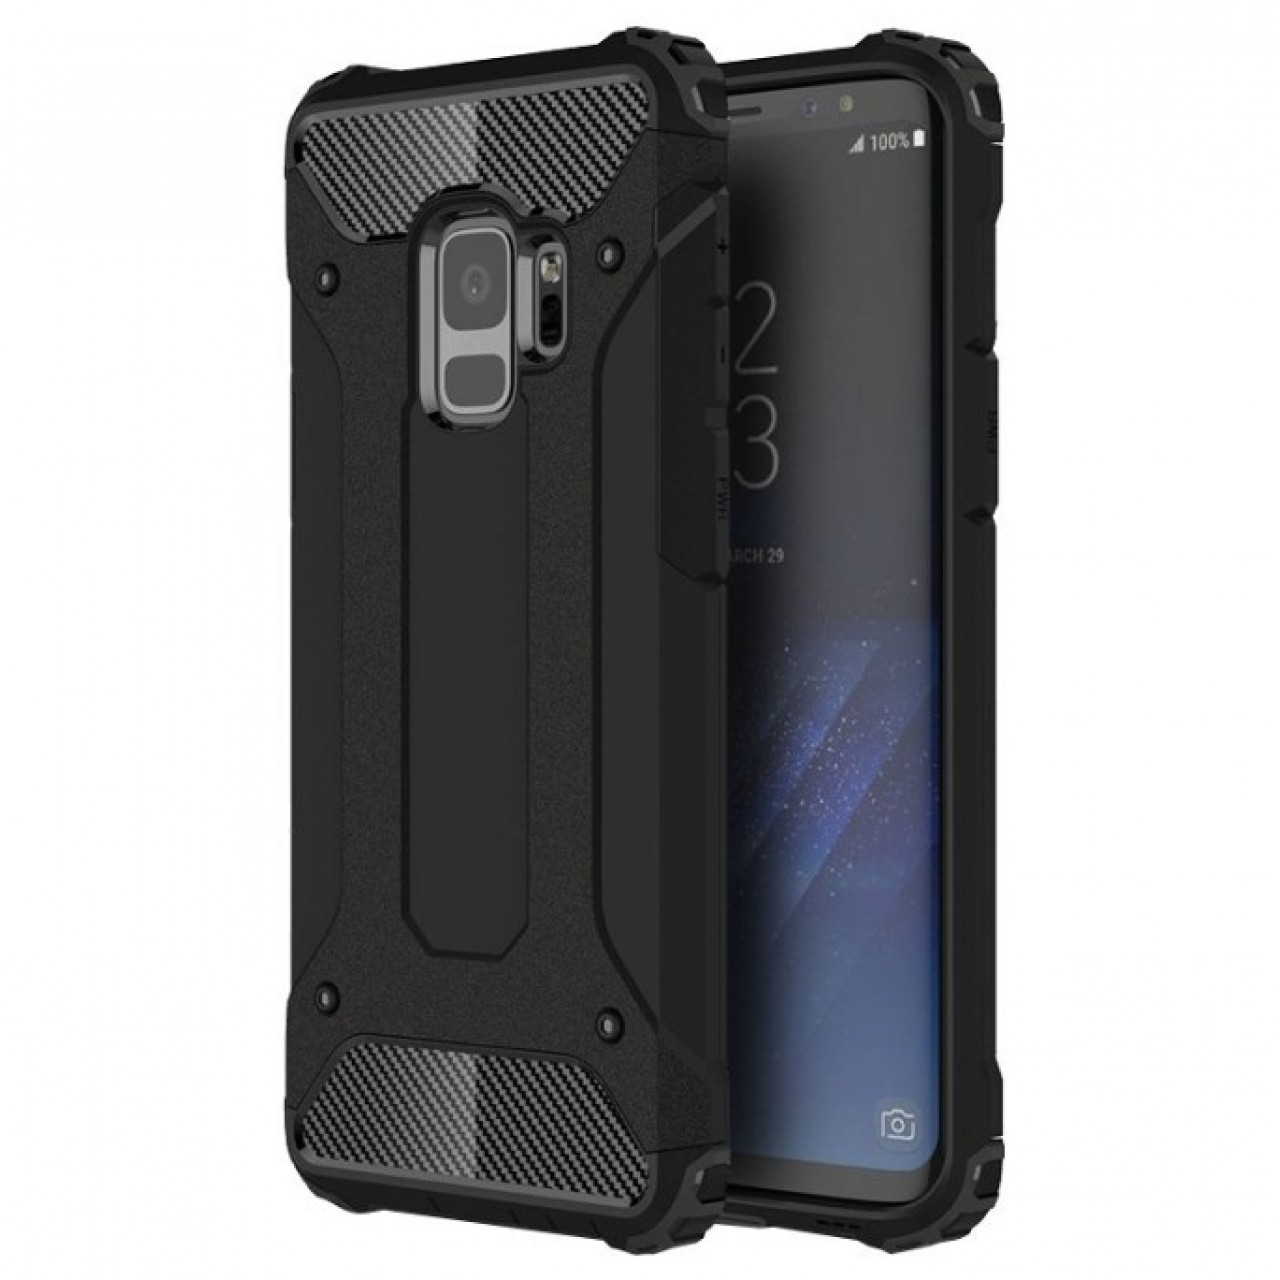 Θήκη Samsung Galaxy S9 (G960F) Hybrid Armor Σιλικόνης και Σκληρό πλαστικό (PC & TPU) - 3775 - Μαύρο - OEM